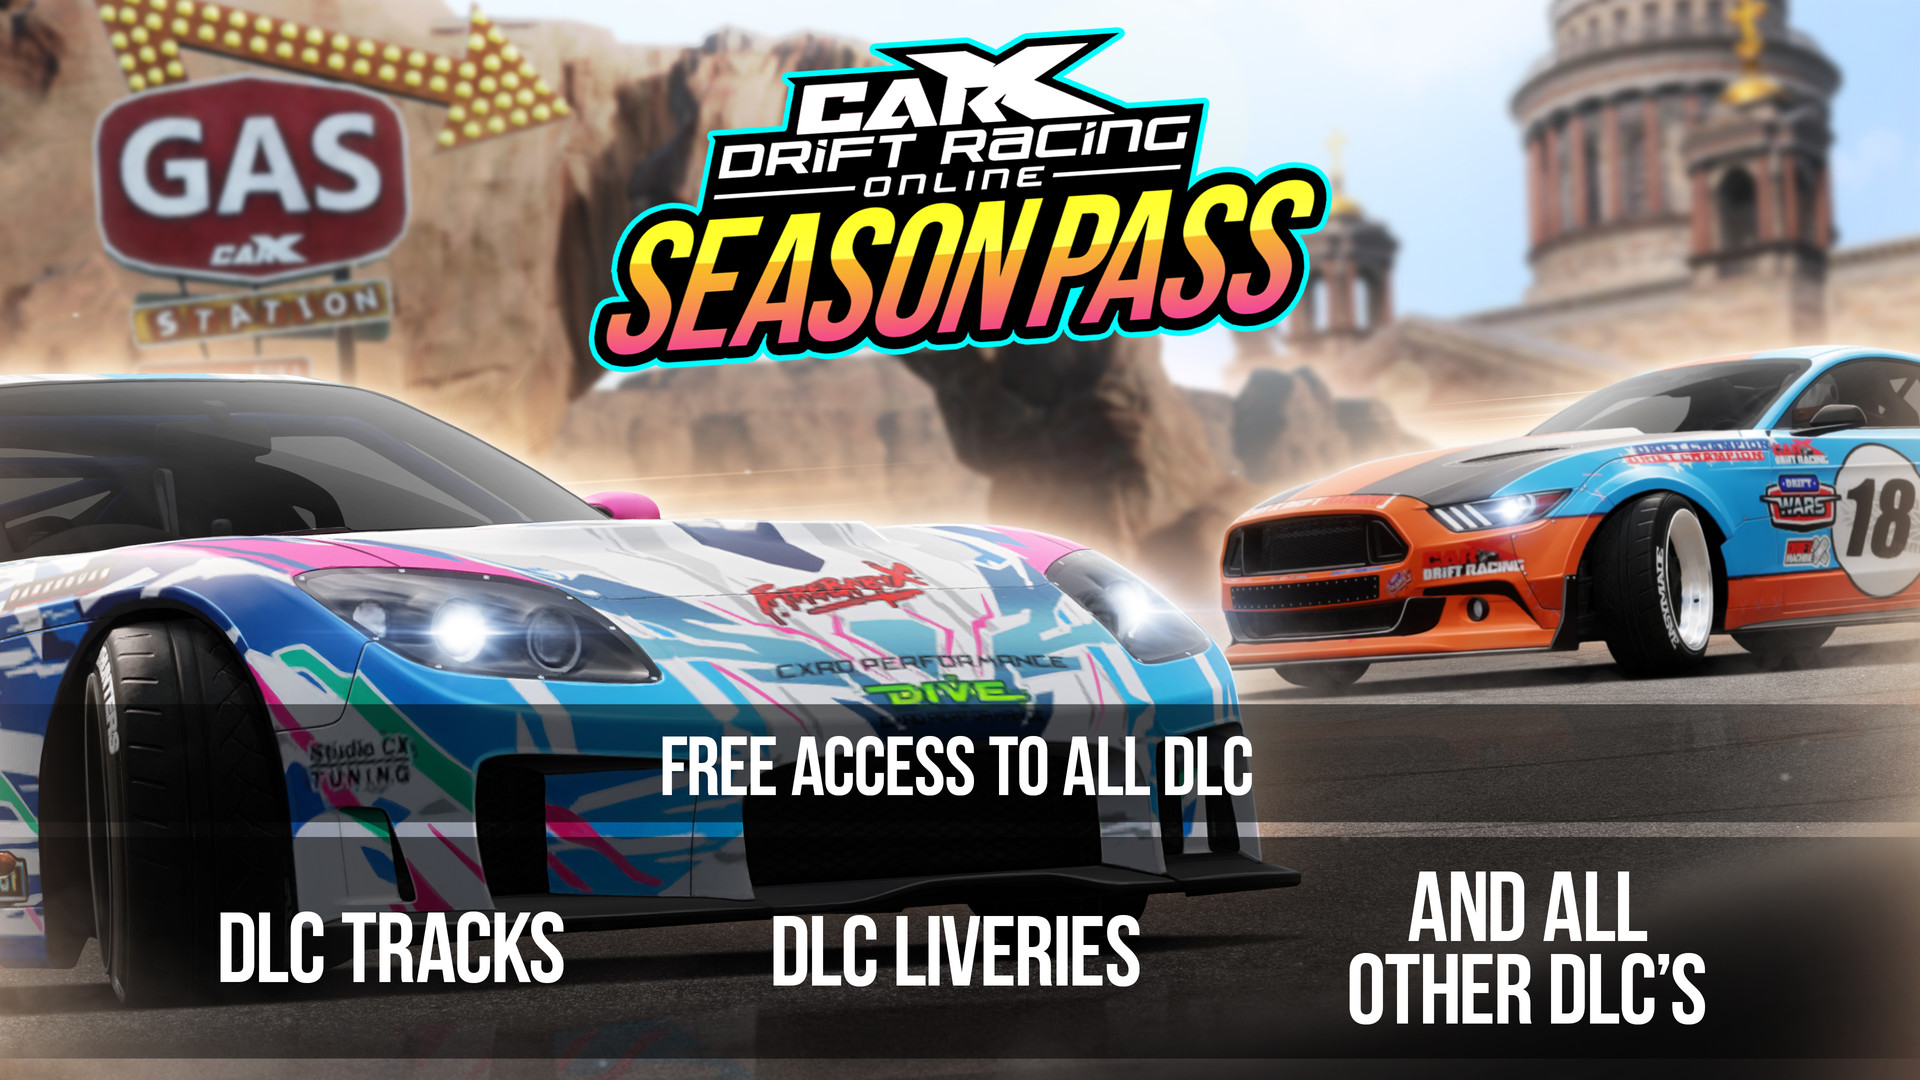 CarX Drift Racing Online - Season Pass Featured Screenshot #1